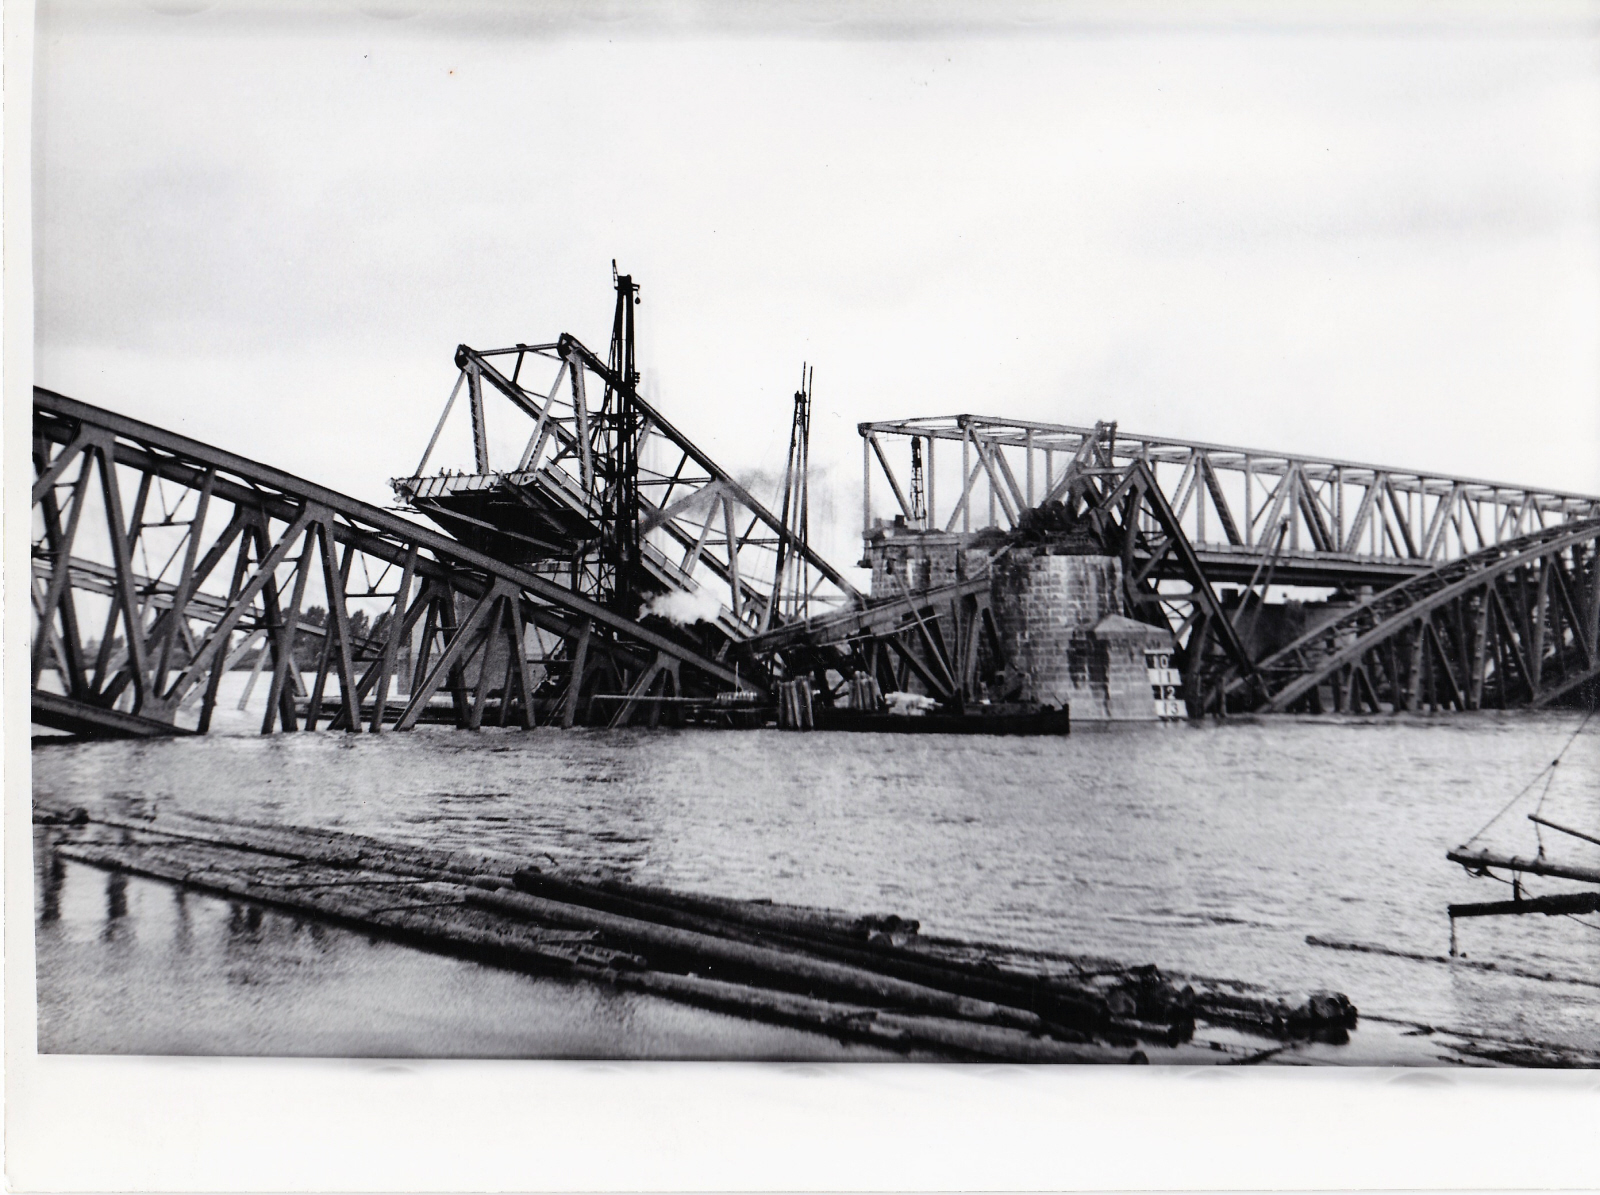 Werkzaamheden aan vernielde spoorbrug bij Zaltbommel, 1940